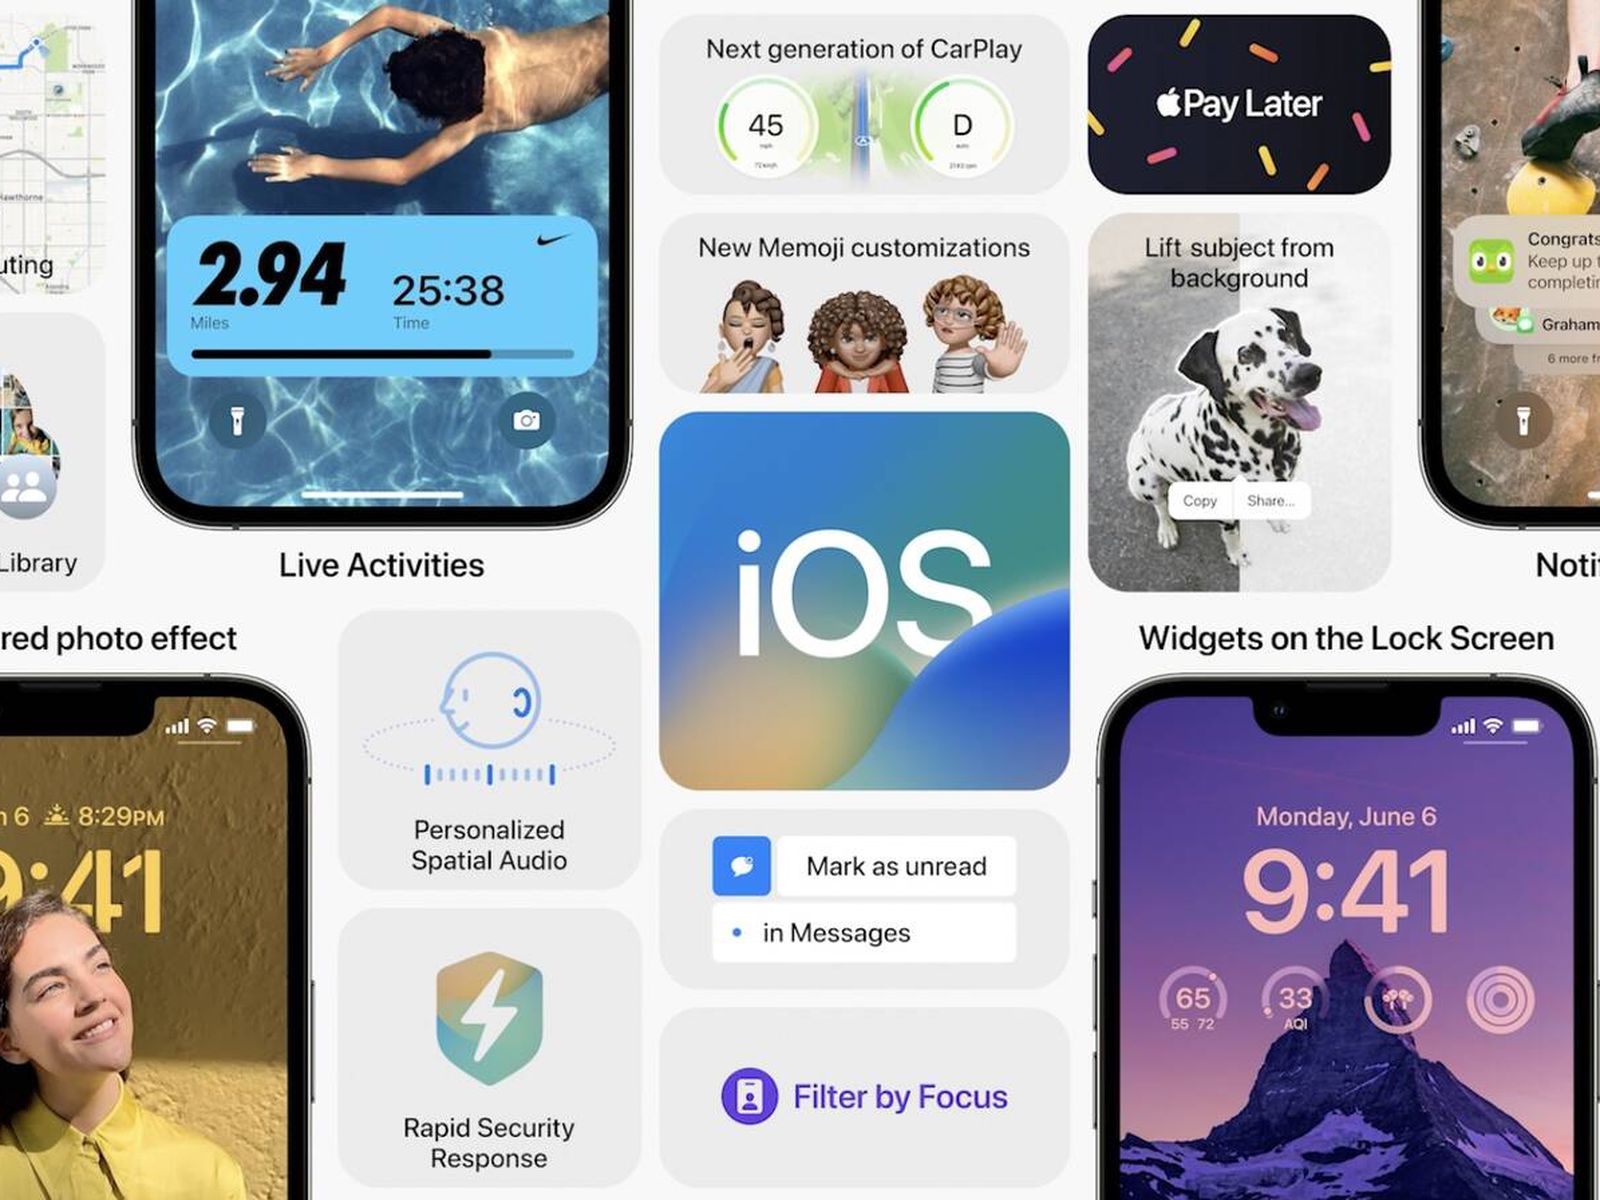 Bạn đang sử dụng phiên bản iPhone cũ và đắn đo quyết định nâng cấp phiên bản iOS mới? Thật may mắn, iOS 16 hỗ trợ người dùng để bỏ phiên bản iPhone cũ, giúp bạn trải nghiệm những tính năng mới đầy ấn tượng và chuyển đổi một cách nhanh chóng và dễ dàng.